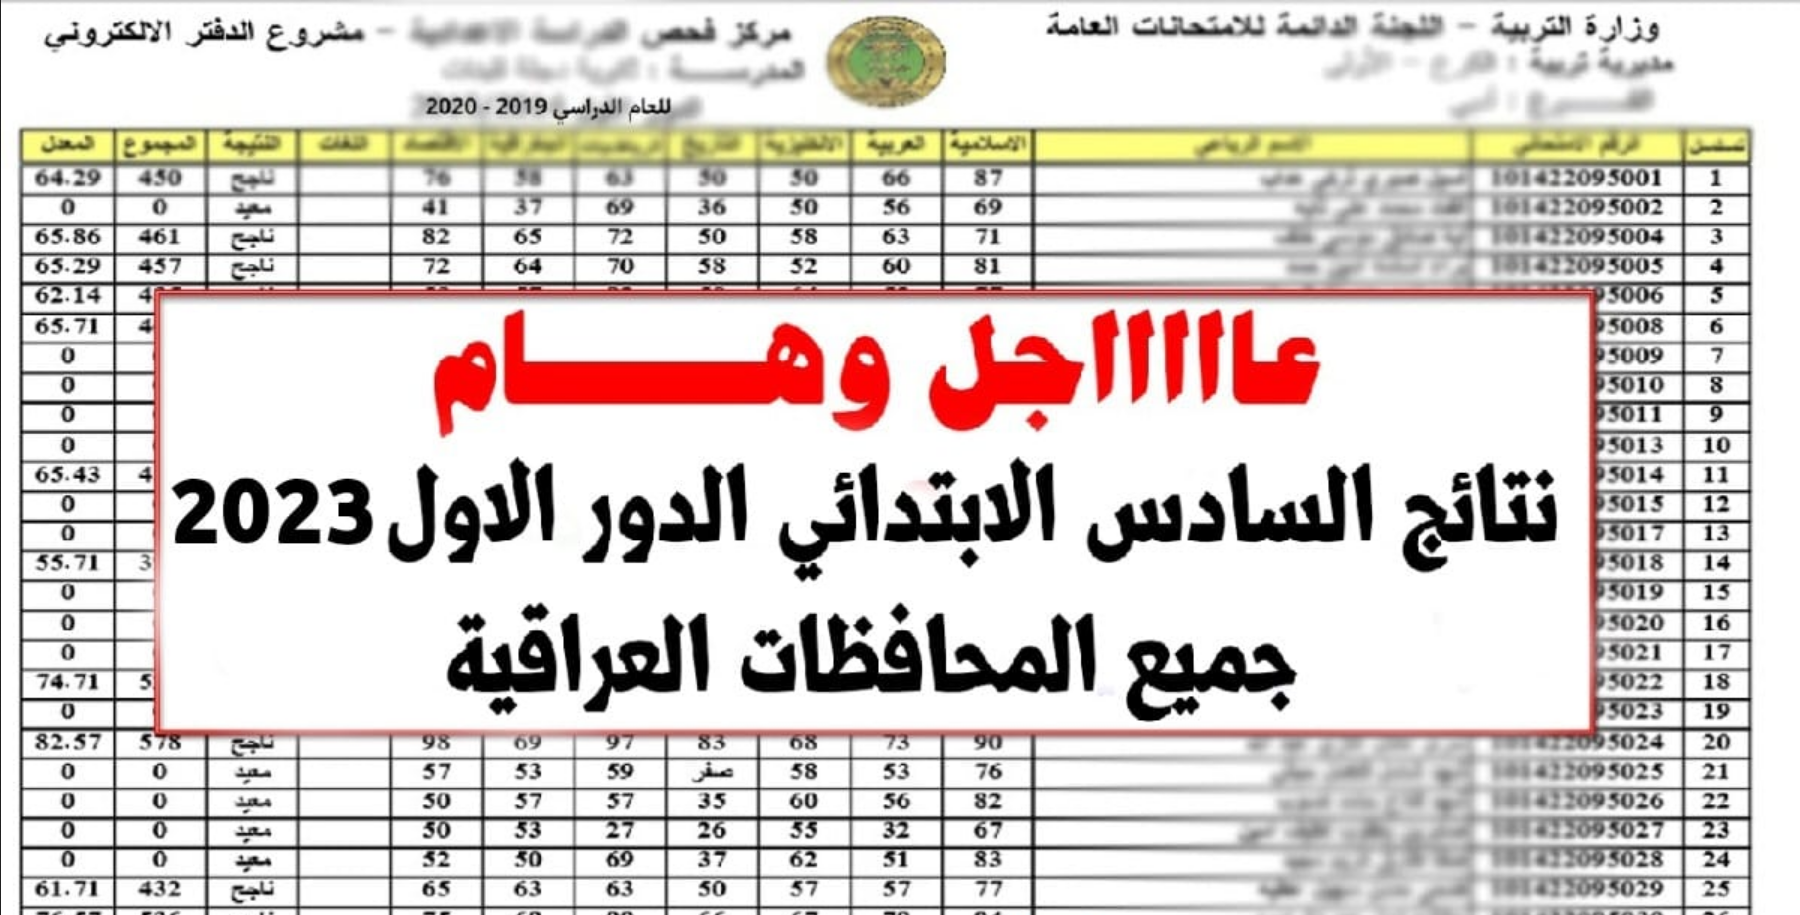  نتيجة سادس تمهيدي كل مديريات العراق عبر وزارة التربية و صحافة العرب .. نتائج الصف السادس الابتدائي ٢٠٢٣